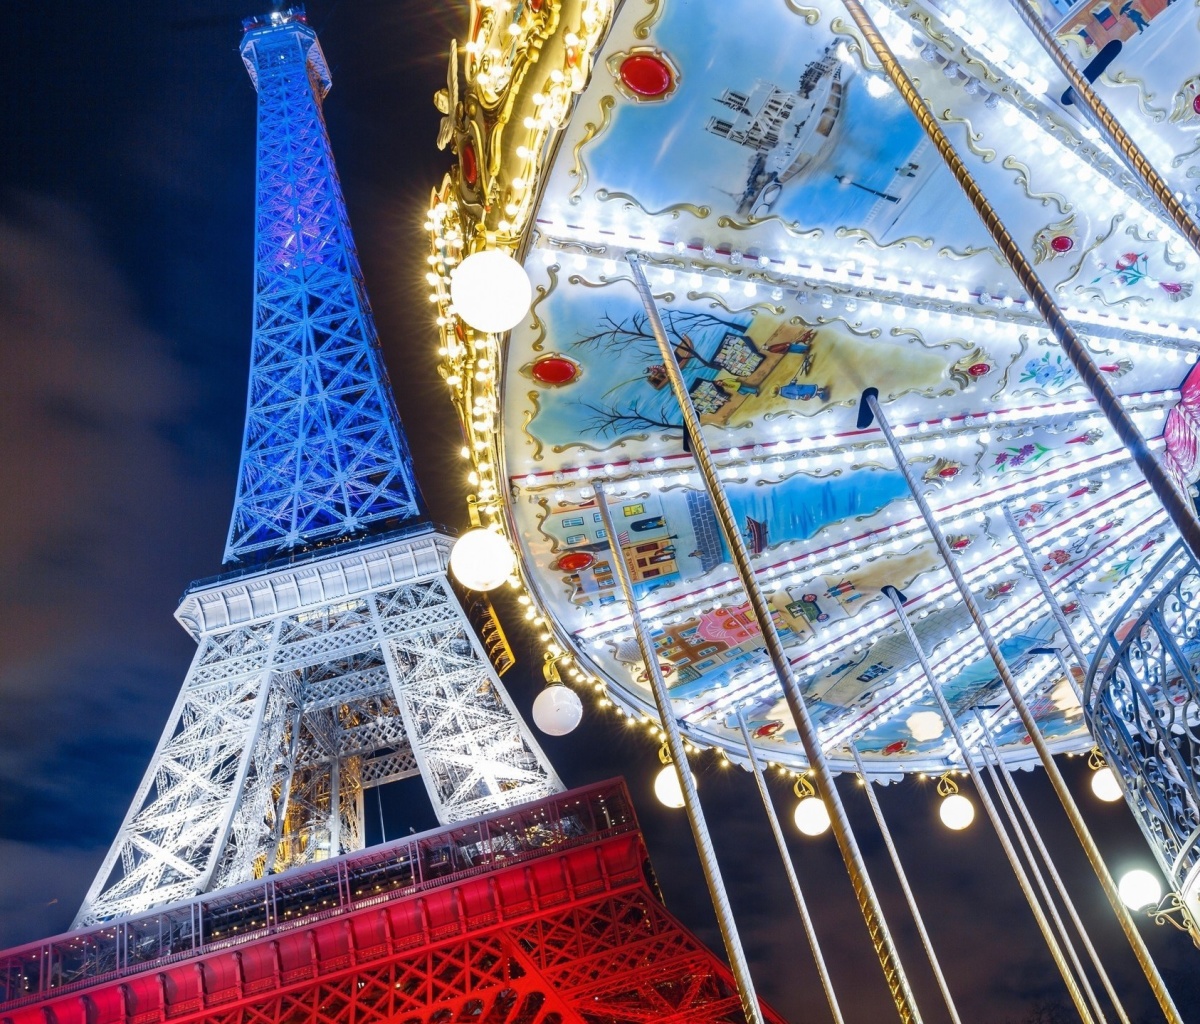 Обои Eiffel Tower in Paris and Carousel 1200x1024